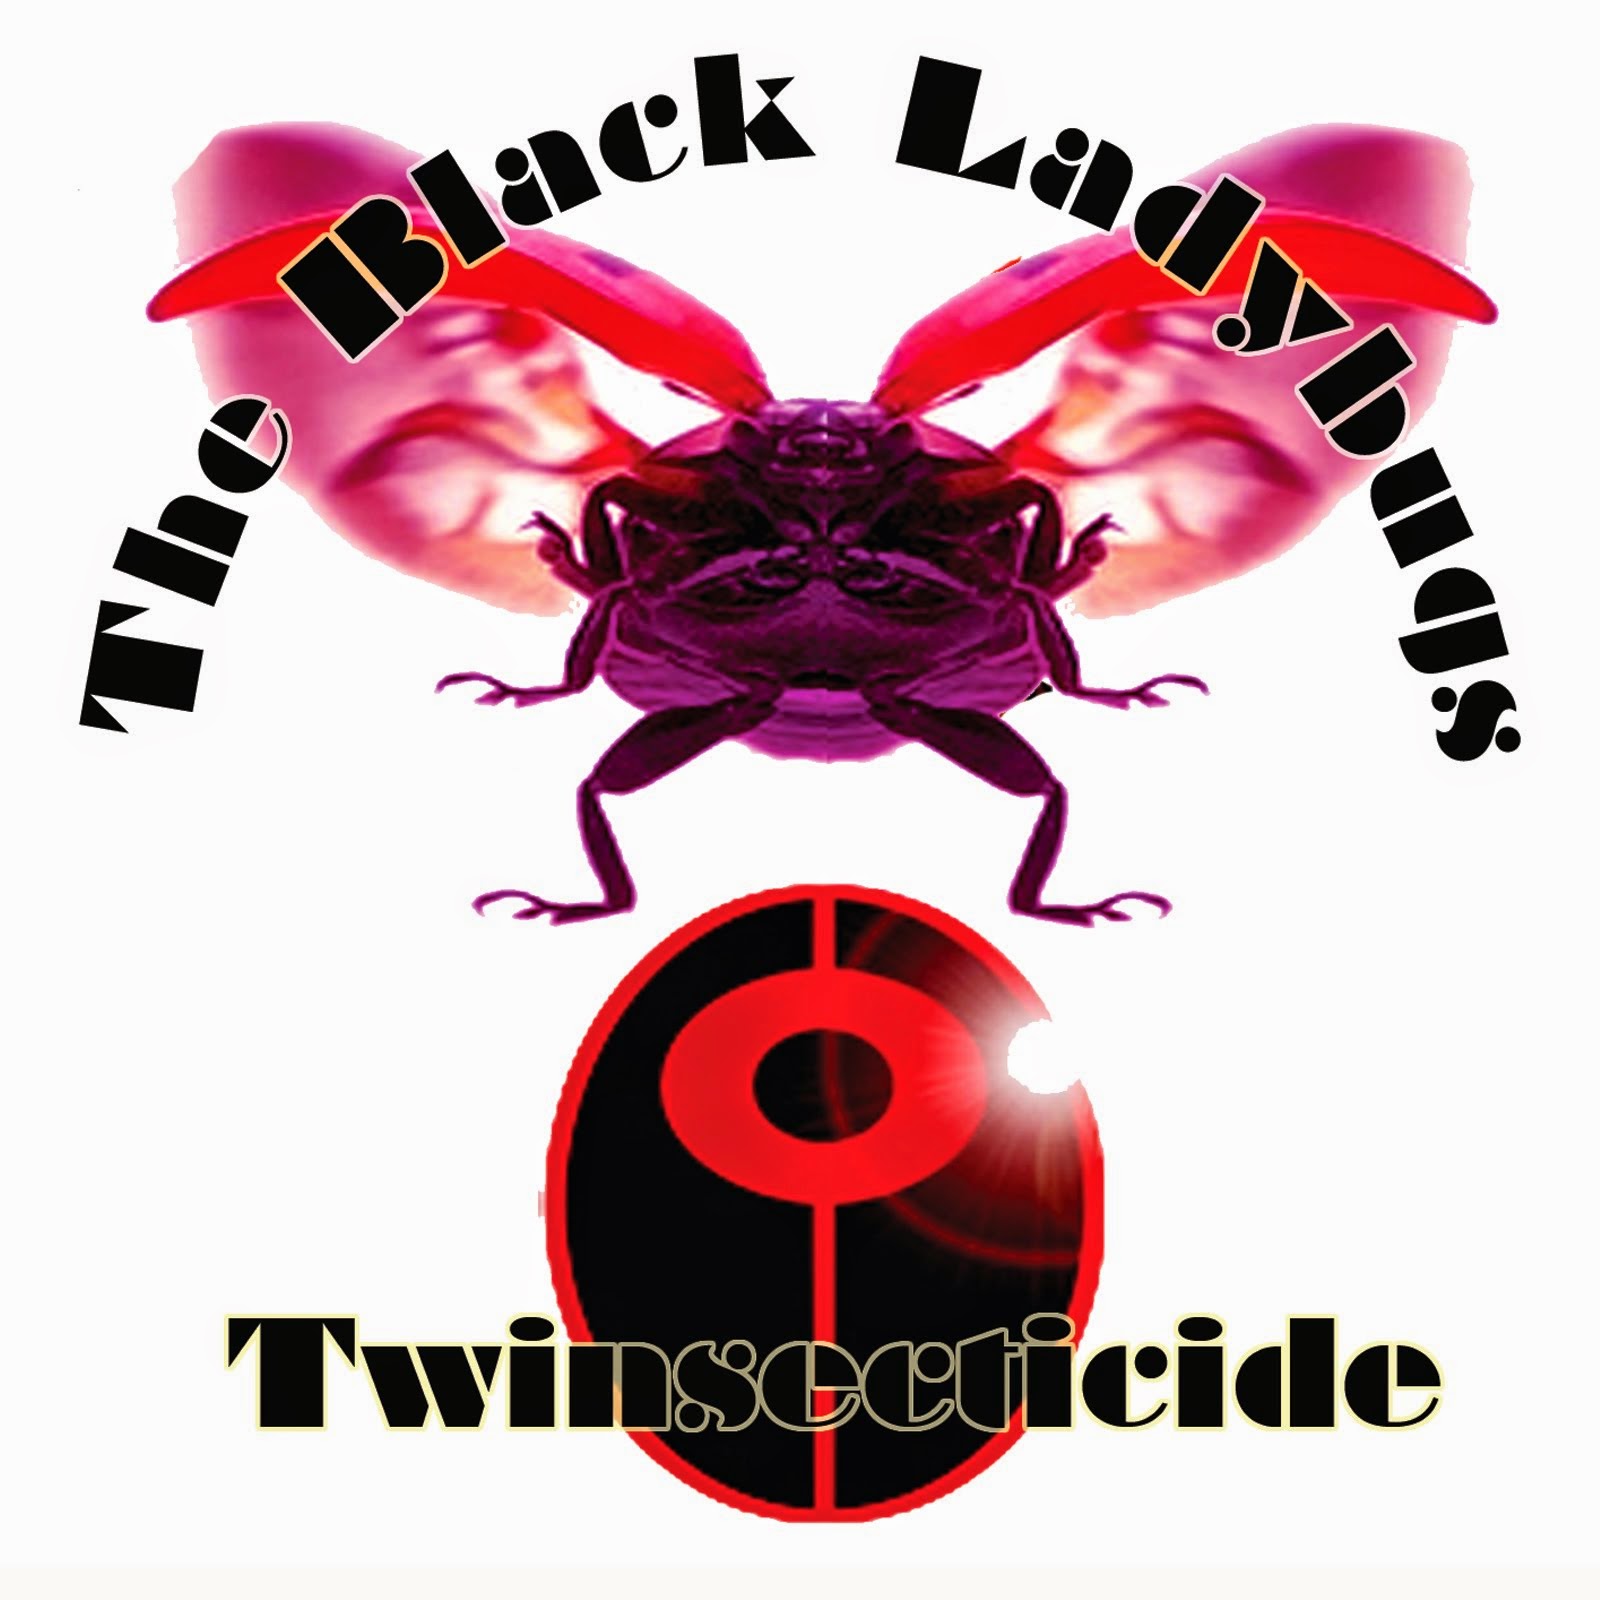 THE BLACK LADYBUGS